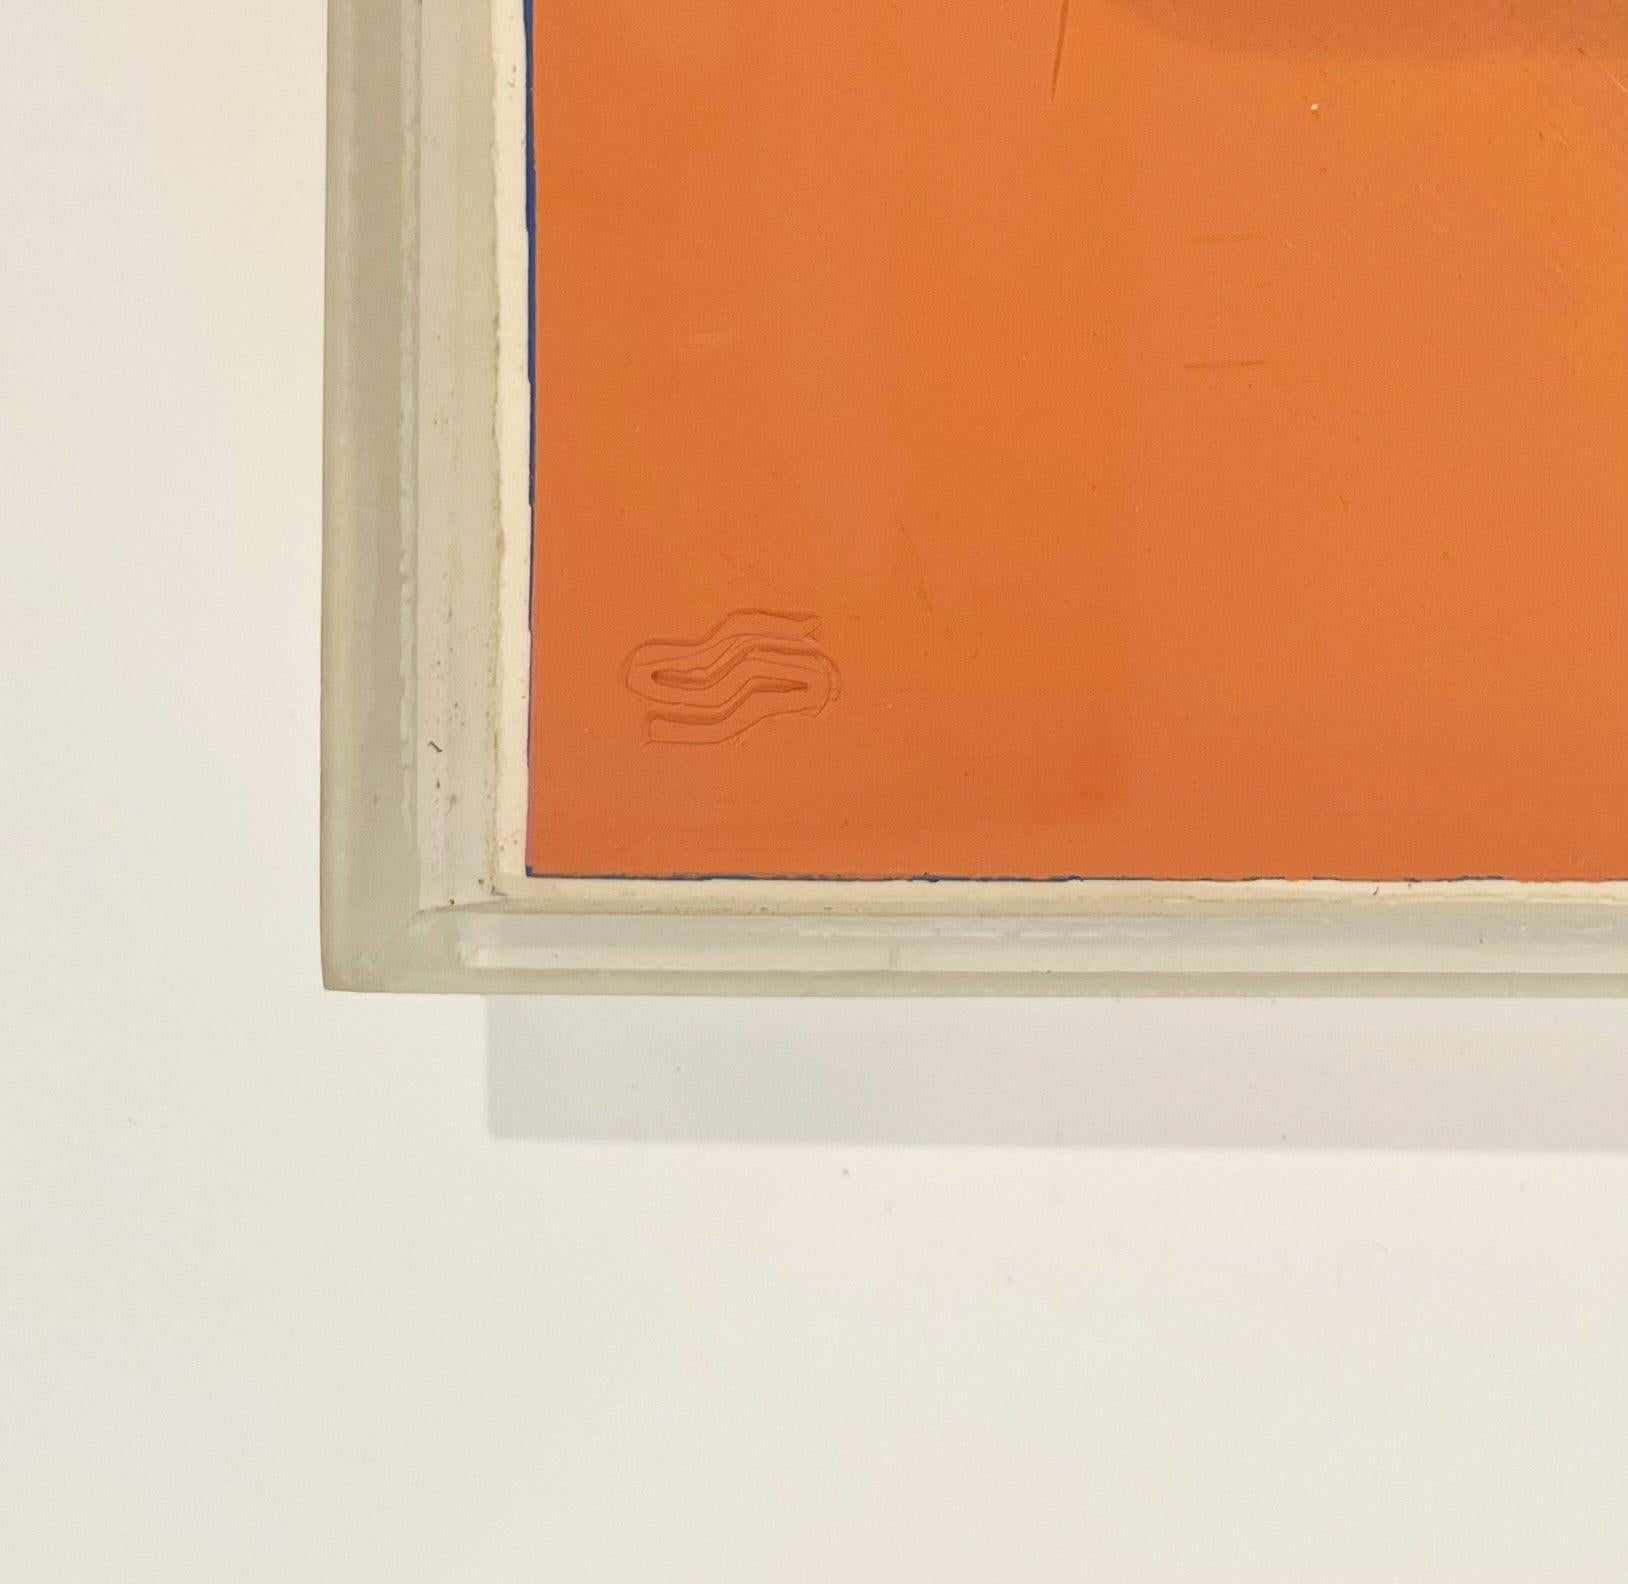 Artiste : Andy Warhol
Titre : Gertrude Stein
Portfolio : Dix portraits de Juifs du XXe siècle
Médium : Sérigraphie sur panneau Lenox Museum
Date : 1980
Edition : 34/200
Taille du drap : 40